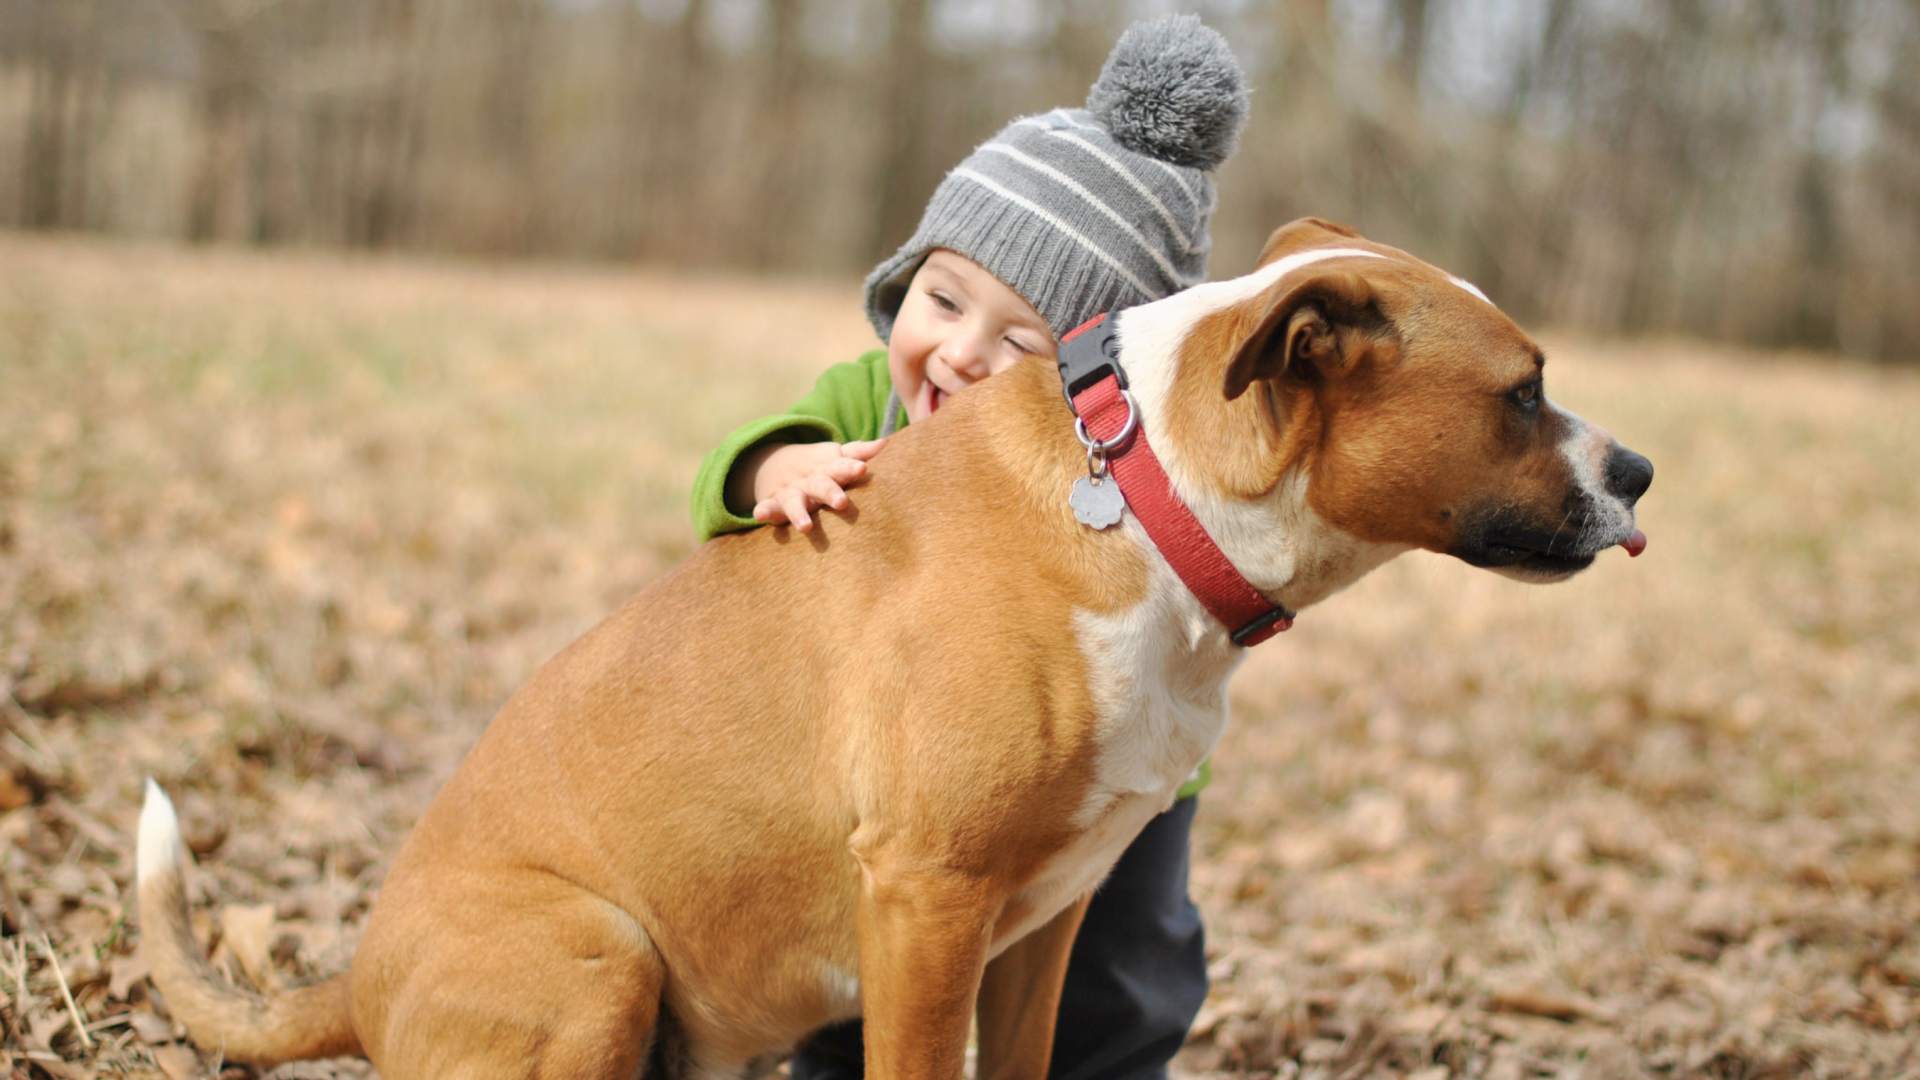 Обои Child With His Dog Friend 1920x1080